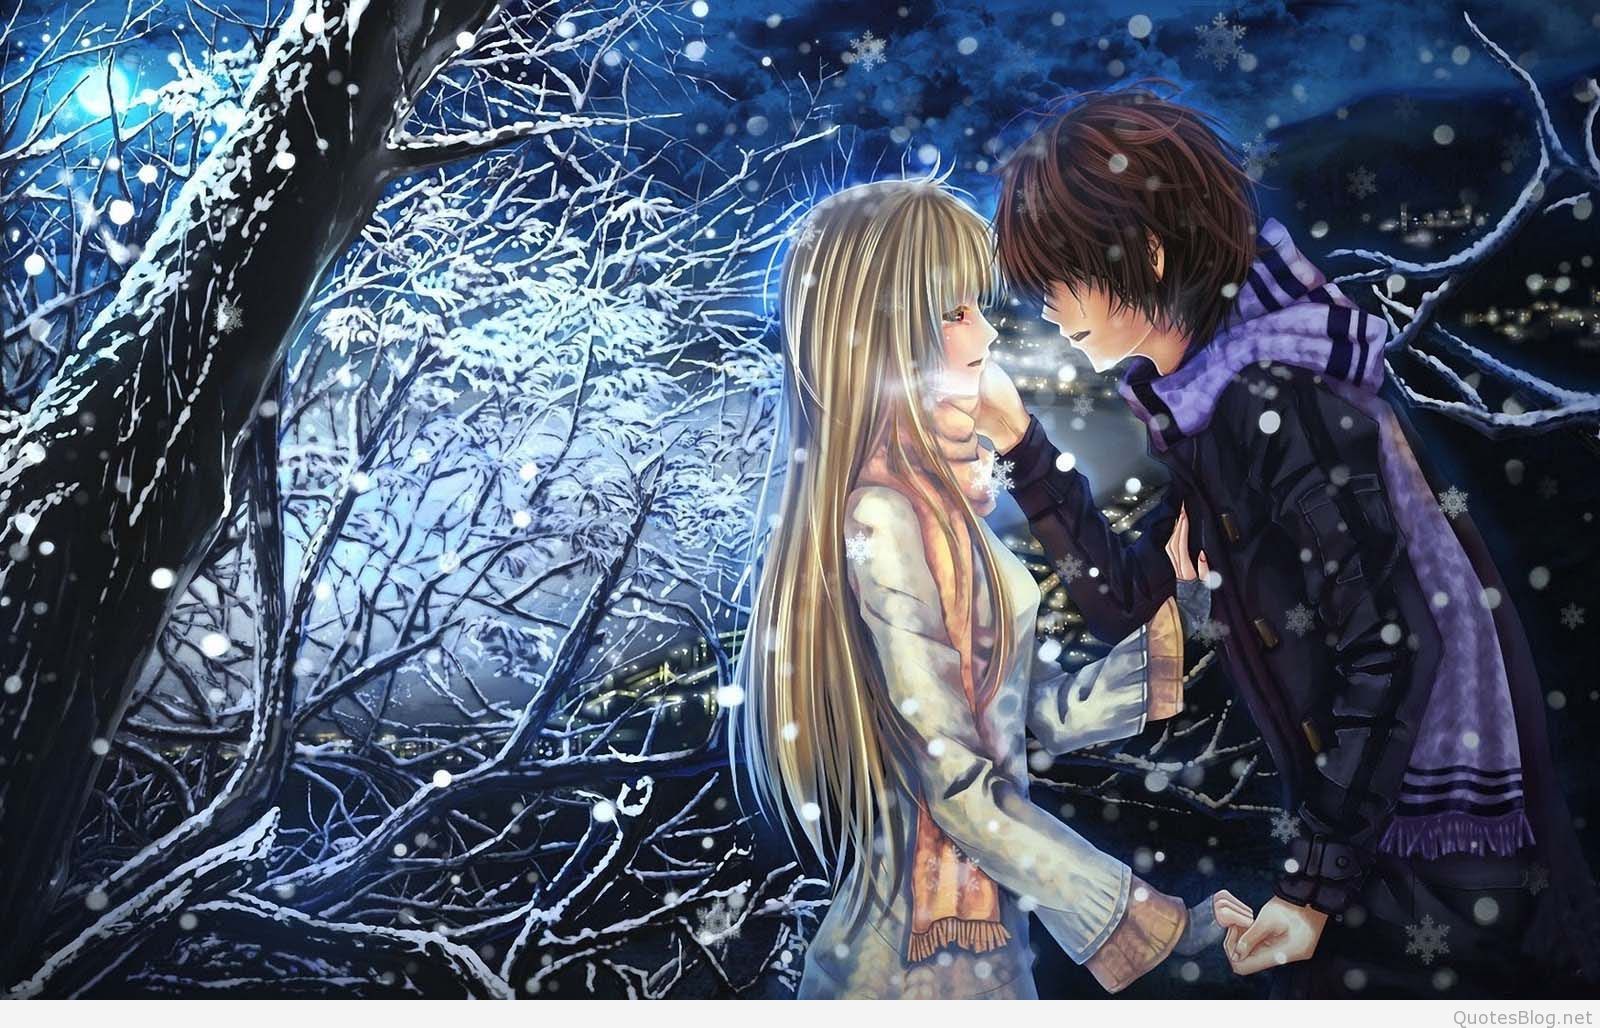 Sad Anime Couples Wallpapers on WallpaperDog